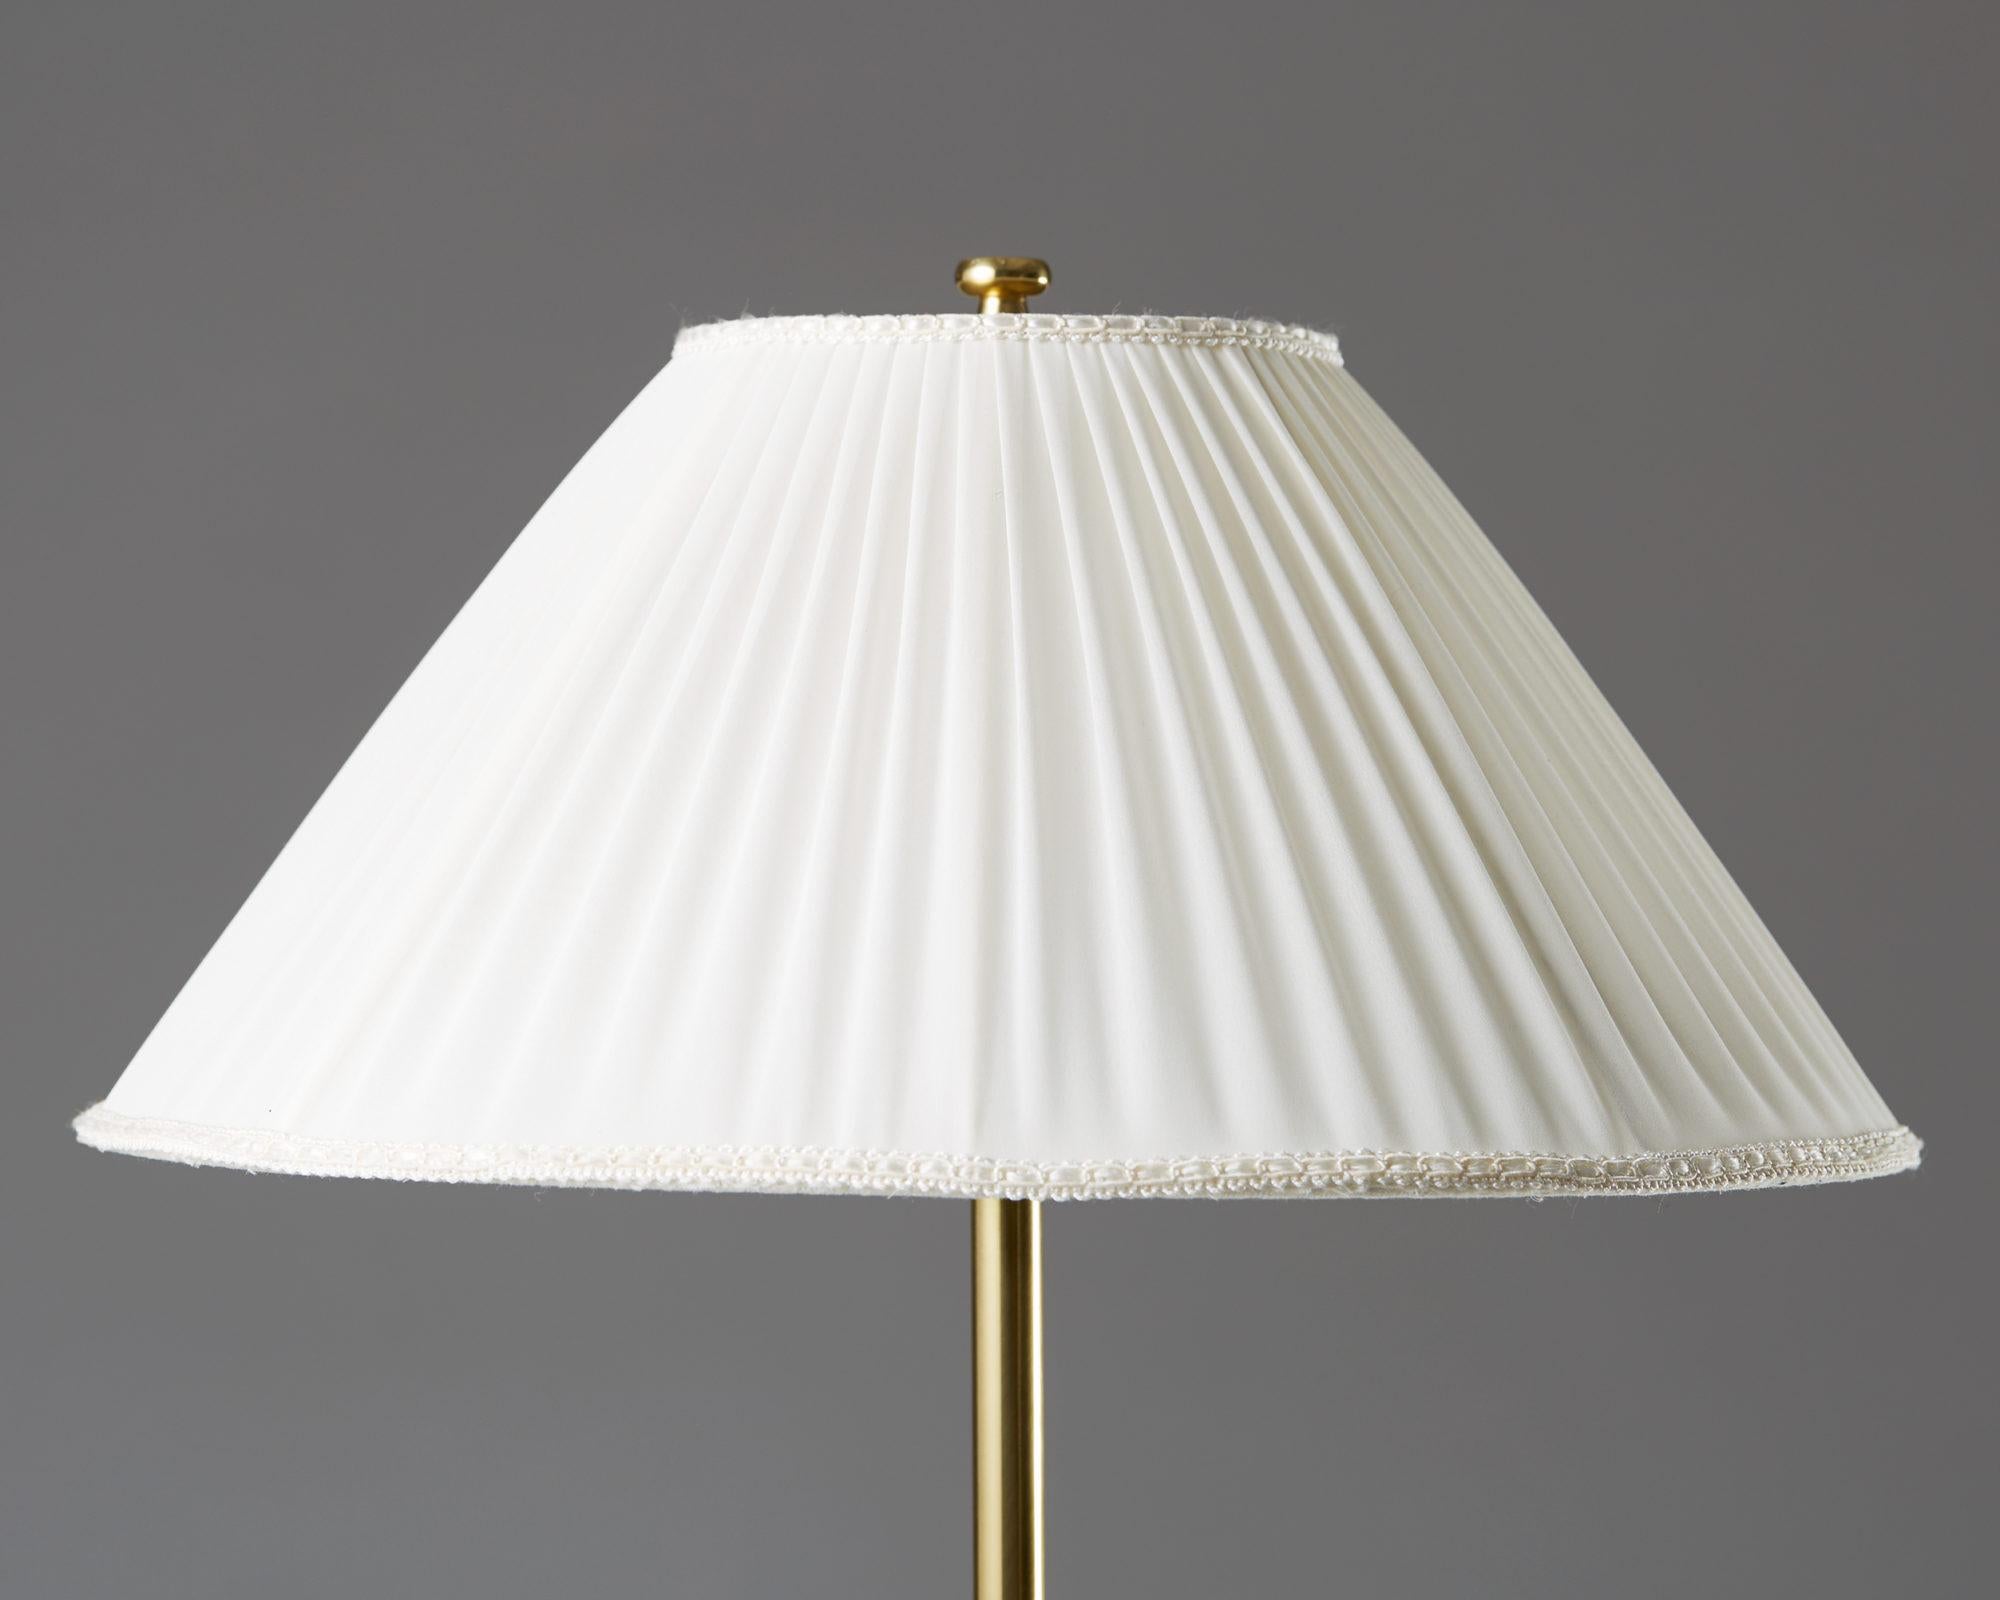 Scandinavian Modern Table Lamp Model 2467 Designed by Josef Frank for Svenskt Tenn, Sweden, 1950s